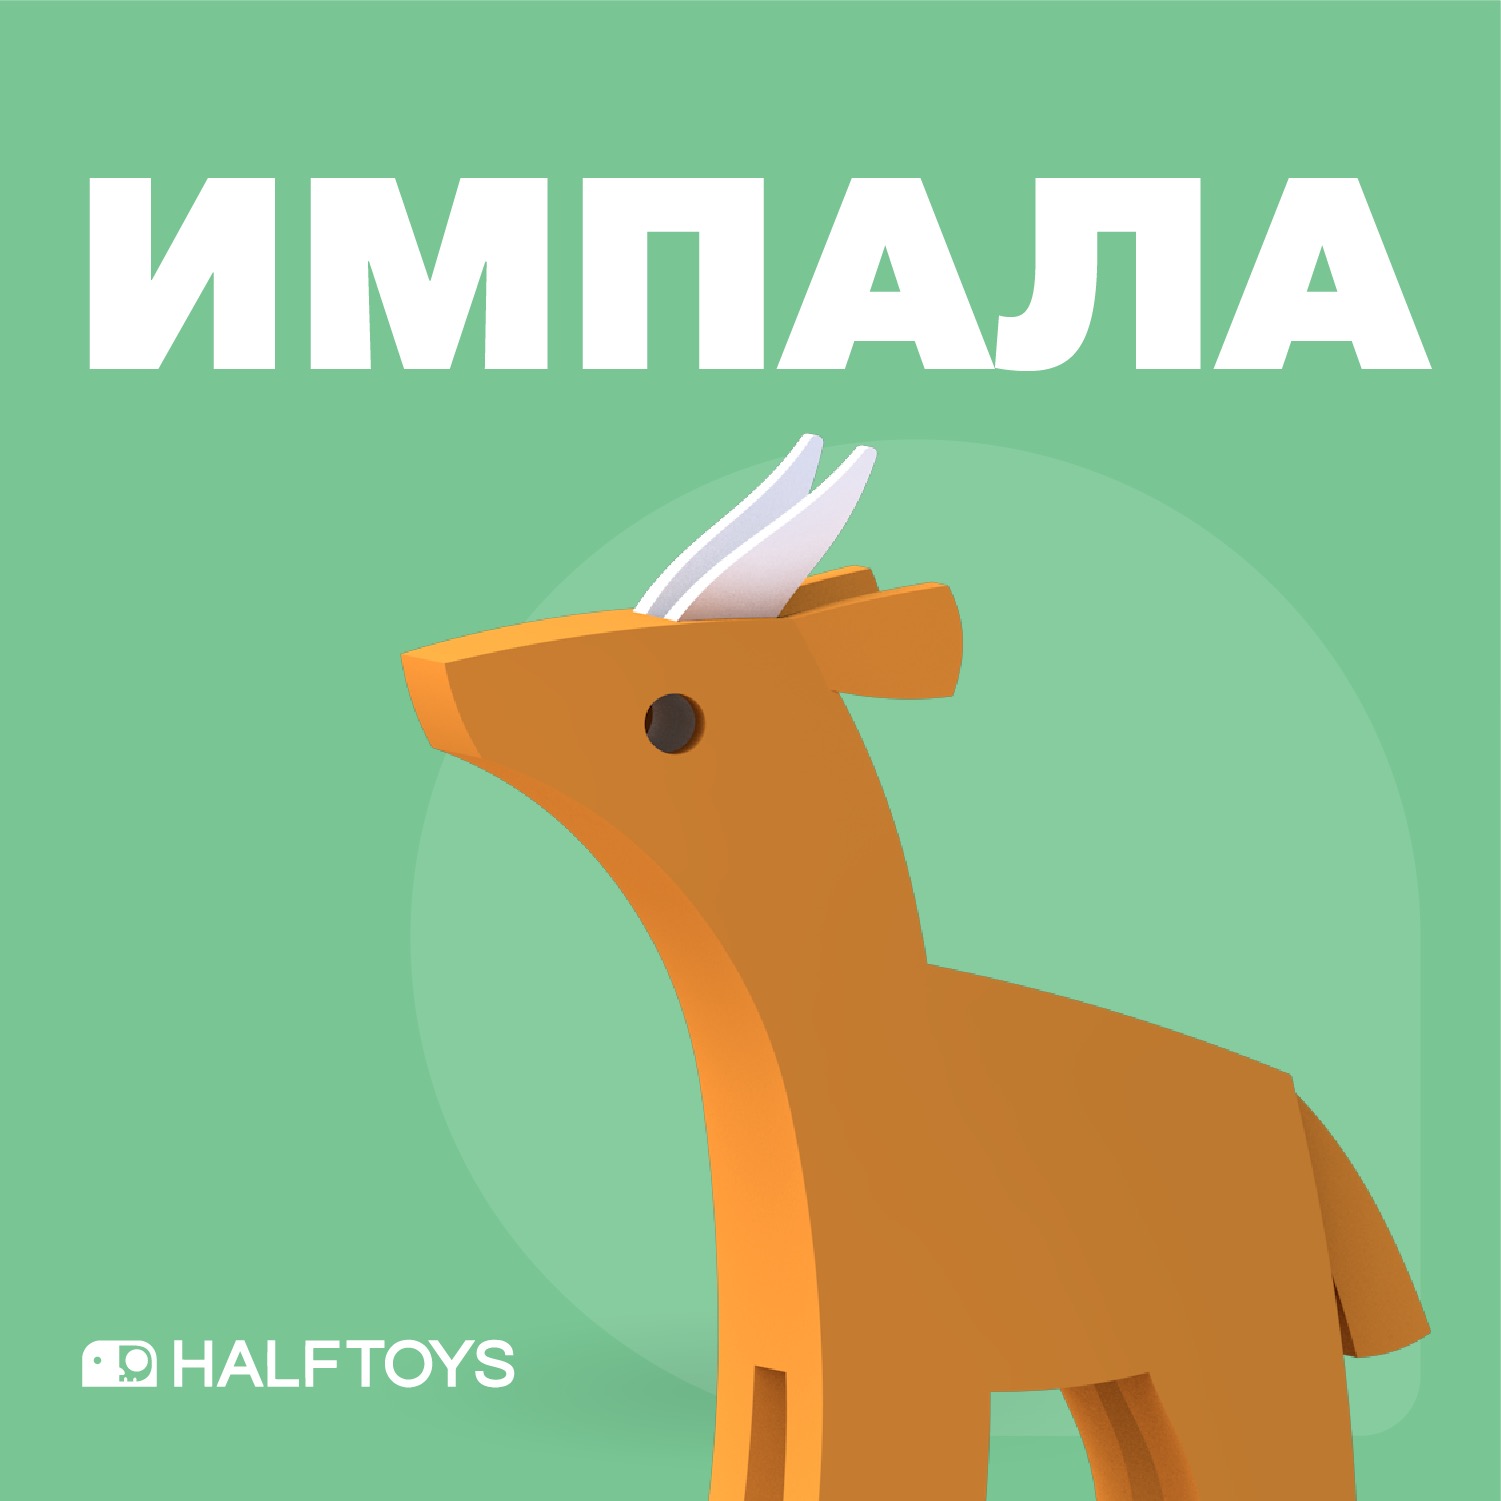 Фигурка HALFTOYS ANIMAL Импала, магнитная, с диорамой фигурка halftoys animal слон магнитная с диорамой